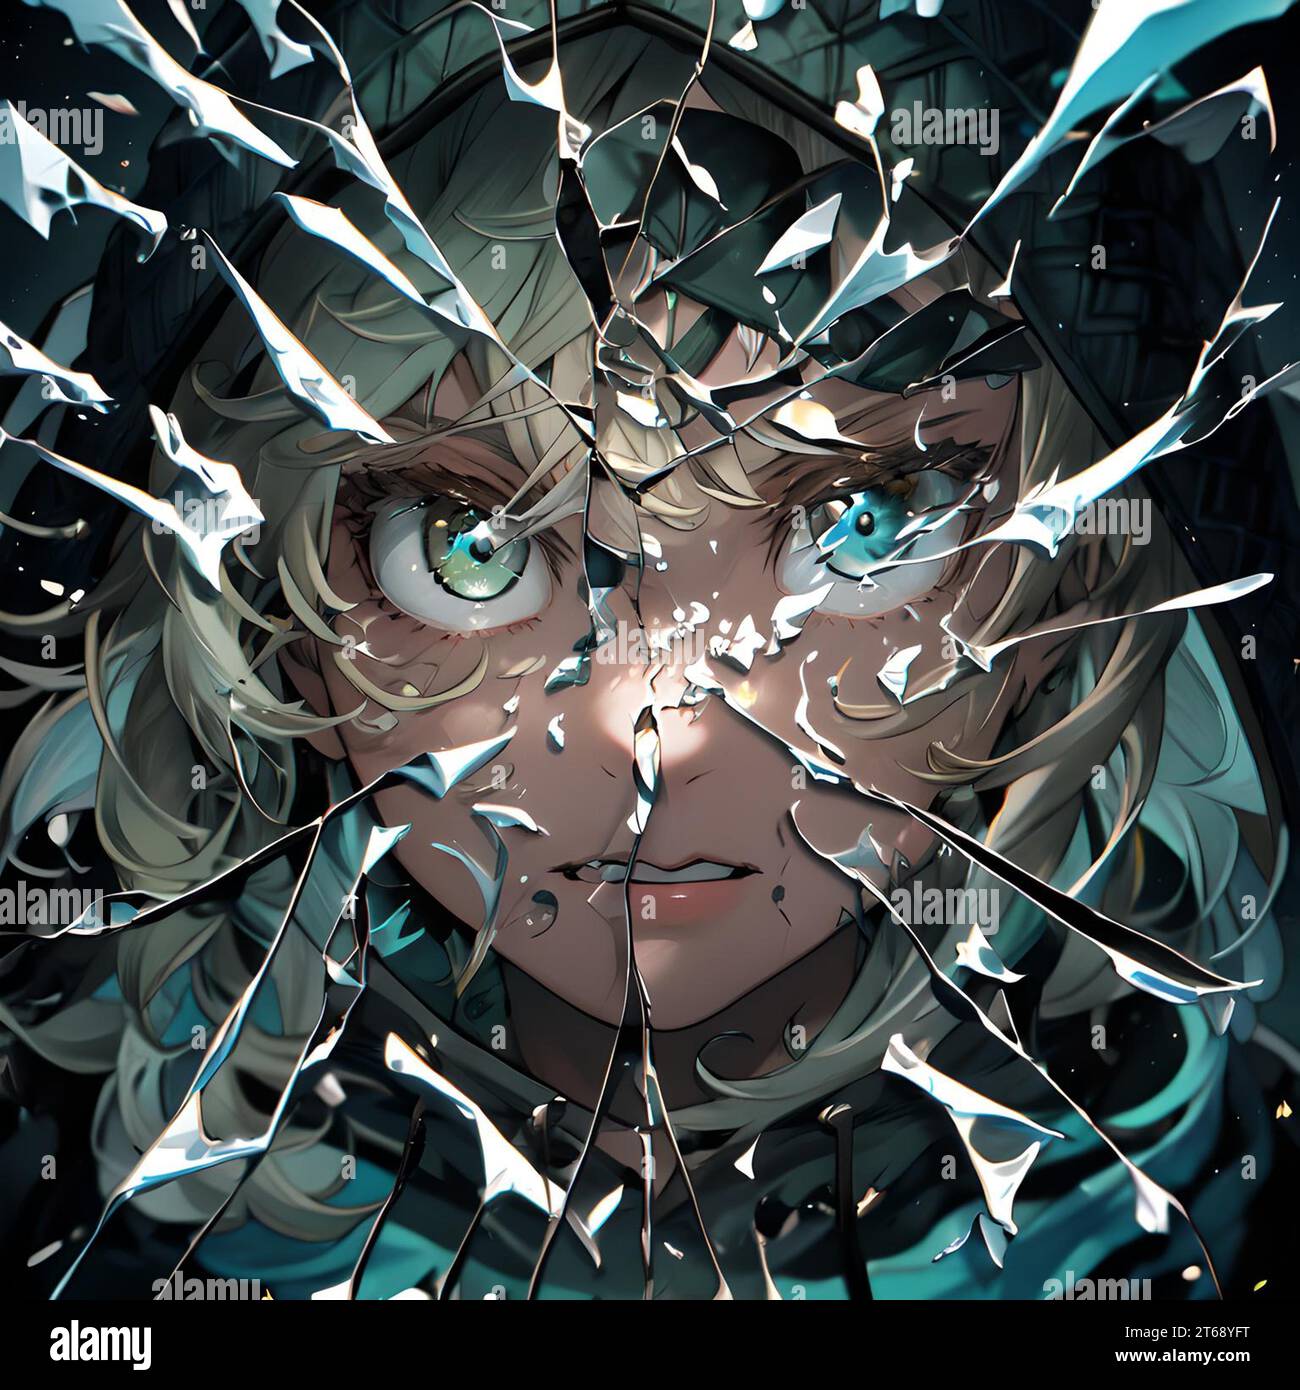 Eine Illustration eines gebrochenen Anime-Charakters, der Kopf und Augen in zwei Spalten zeigt Stockfoto